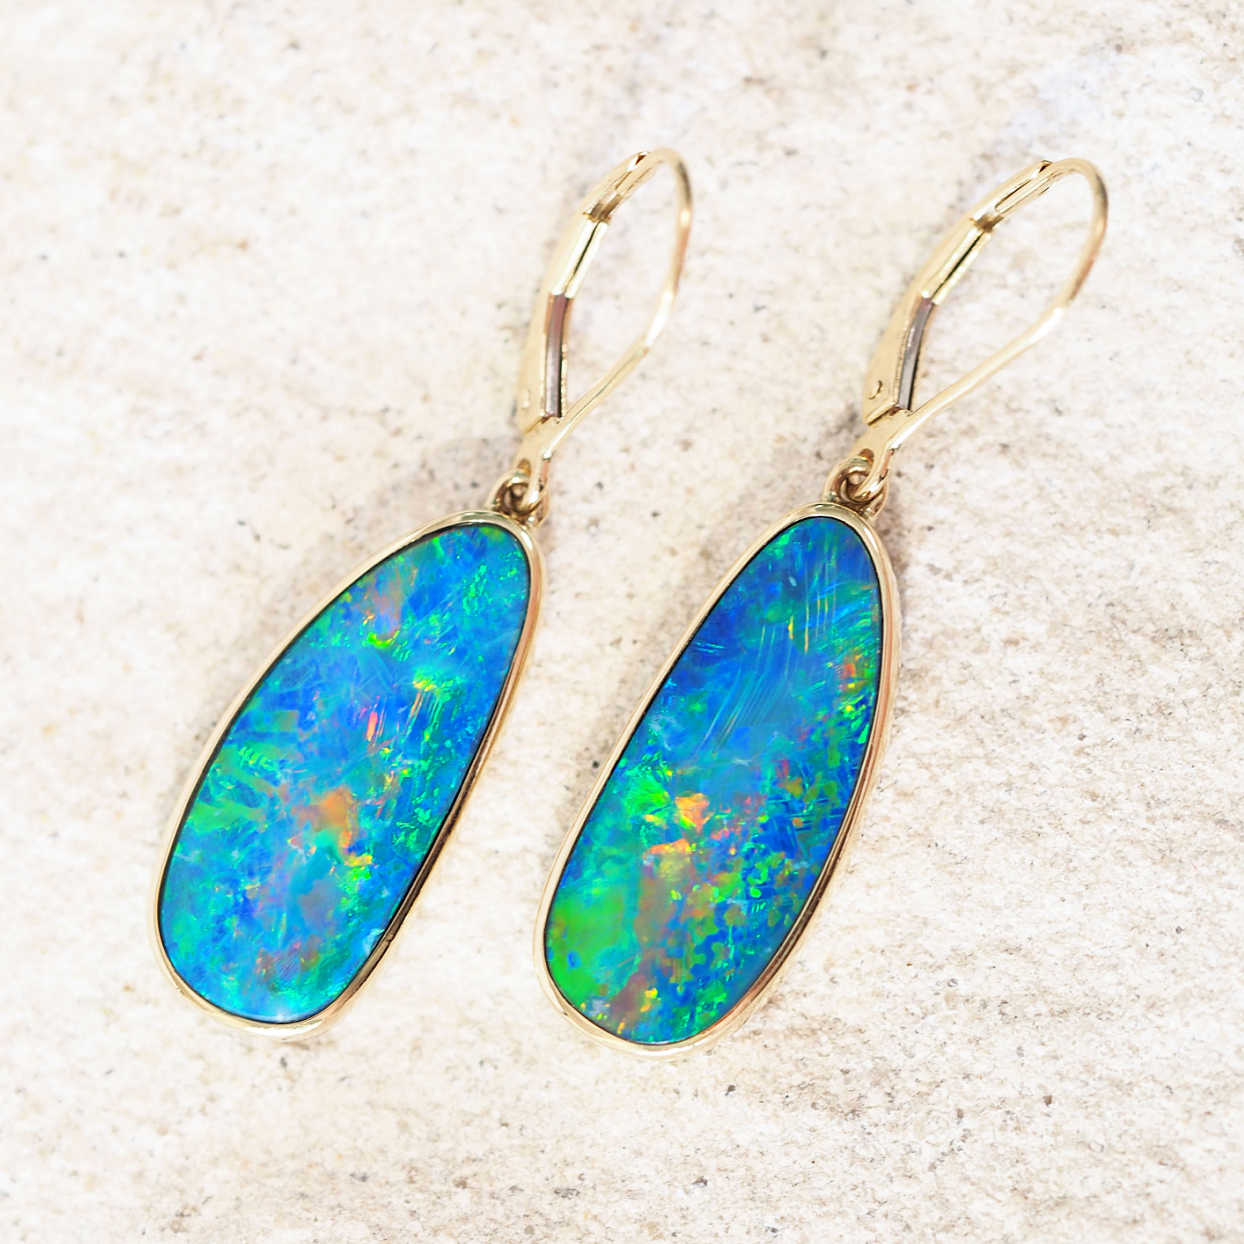 Shop New Opal Jewellery | Australian Opals - Black Star Opal